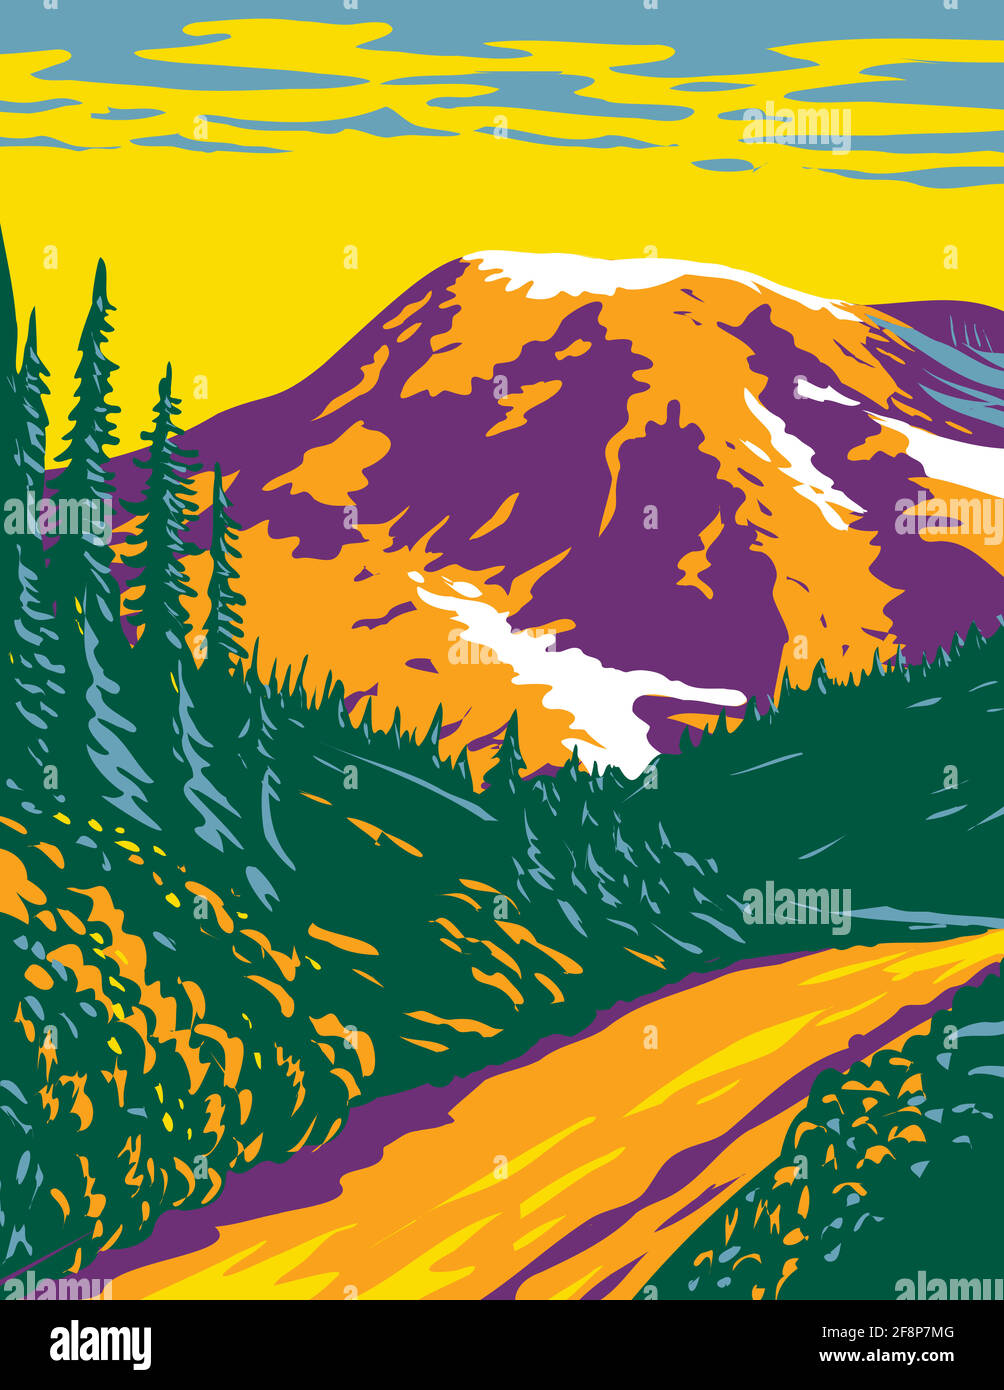 WPA Poster Art of Mount Rainier National Park, un stratovolcan actif dans les Cascades situé dans le comté de Pierce et le comté de Lewis dans l'État de Washington d Illustration de Vecteur